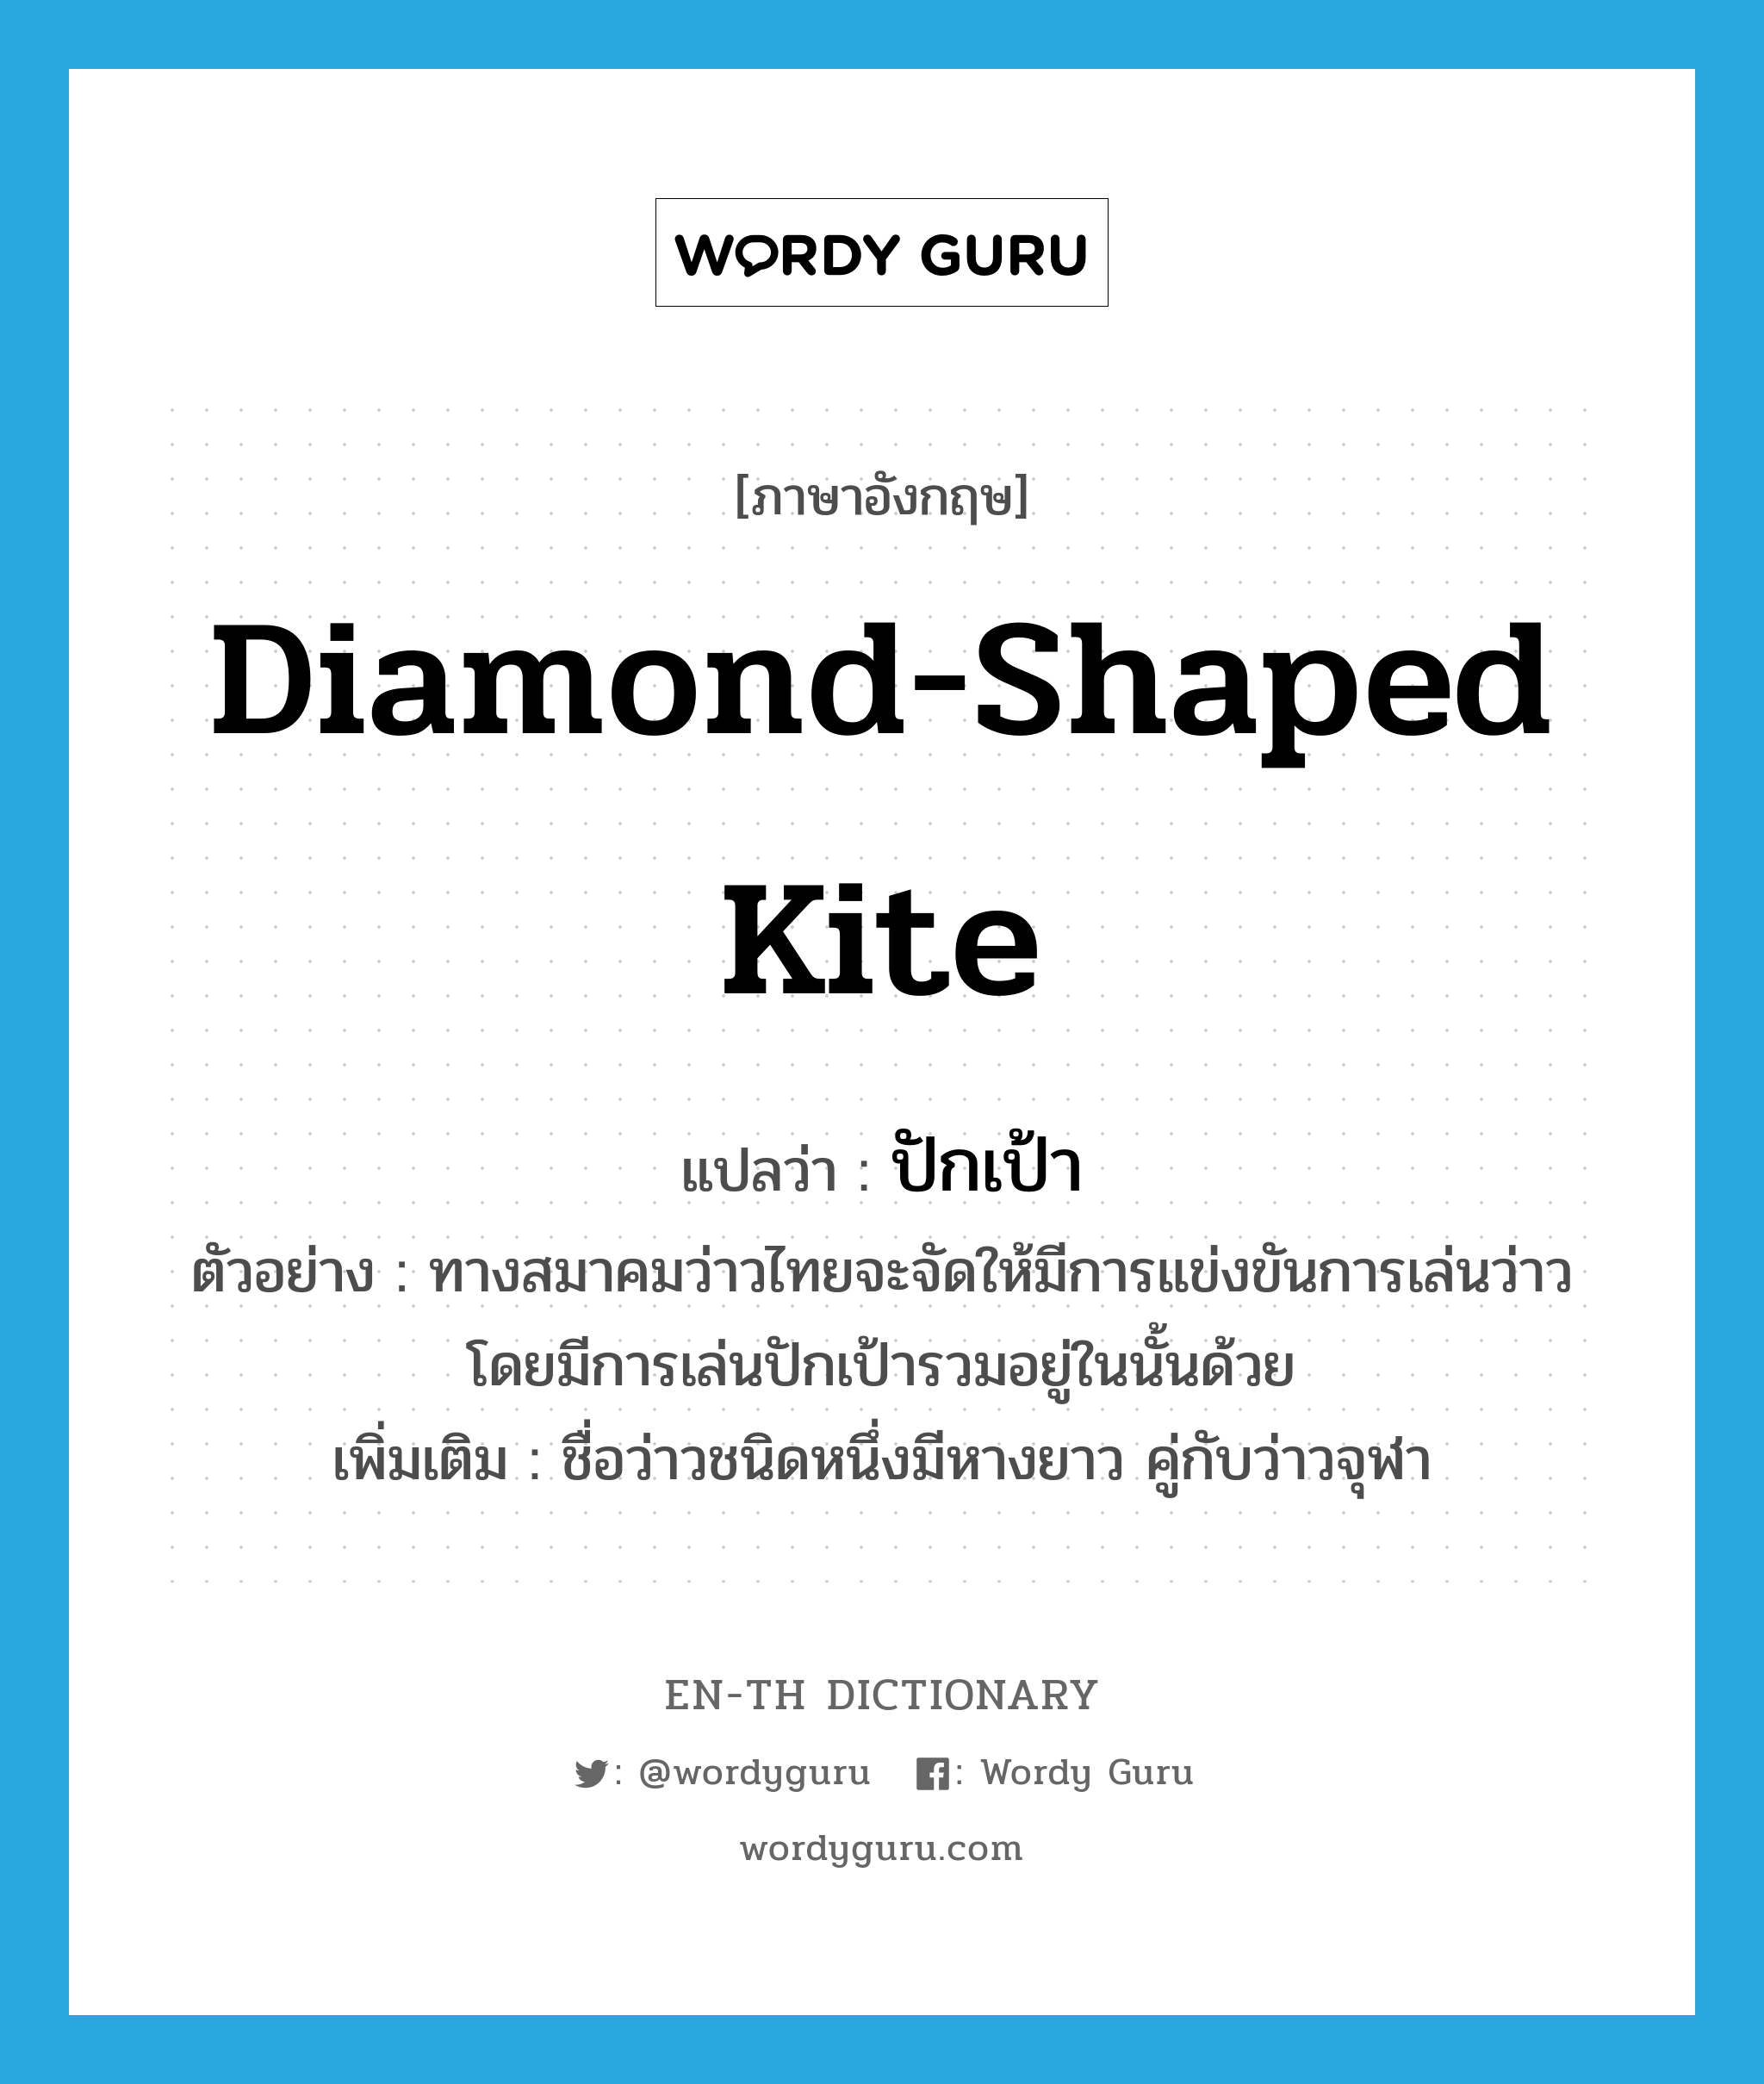 diamond-shaped kite แปลว่า?, คำศัพท์ภาษาอังกฤษ diamond-shaped kite แปลว่า ปักเป้า ประเภท N ตัวอย่าง ทางสมาคมว่าวไทยจะจัดให้มีการแข่งขันการเล่นว่าว โดยมีการเล่นปักเป้ารวมอยู่ในนั้นด้วย เพิ่มเติม ชื่อว่าวชนิดหนึ่งมีหางยาว คู่กับว่าวจุฬา หมวด N